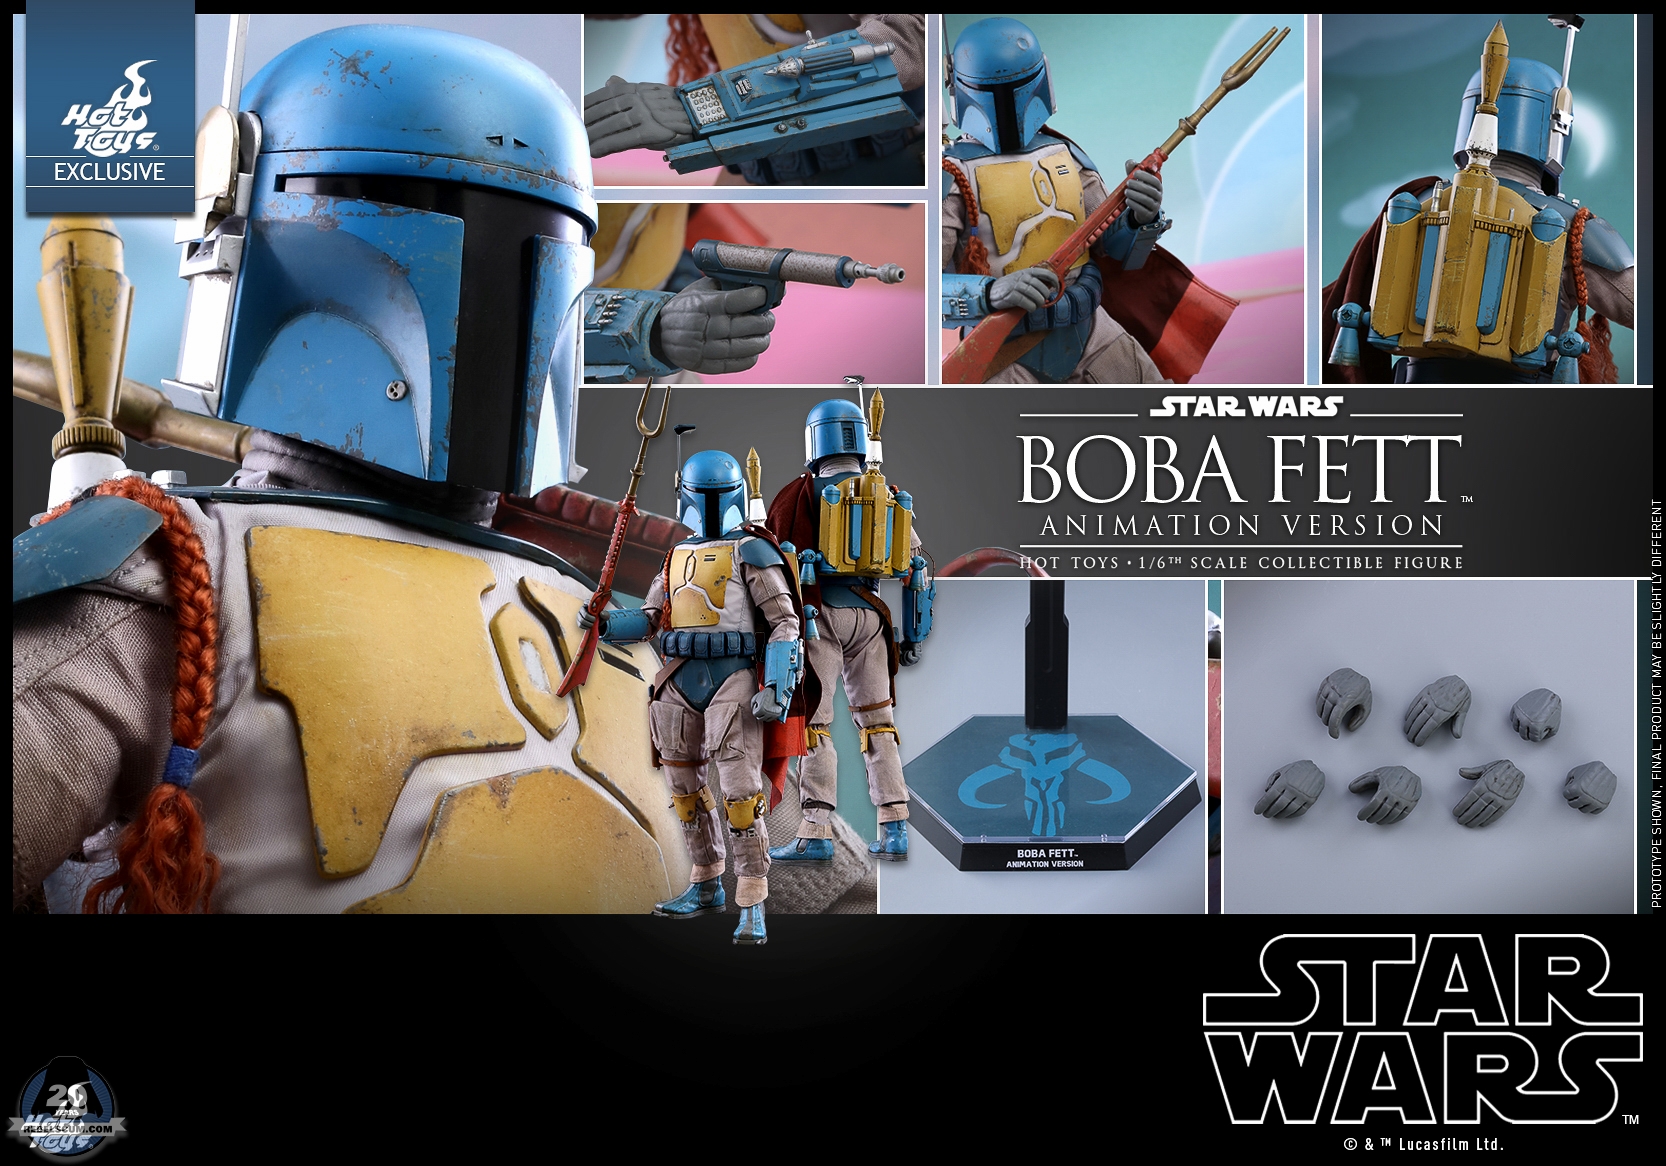 Hot-Toys-TMS006-Star-Wars-Boba-Fett-Animation-Version-017.jpg